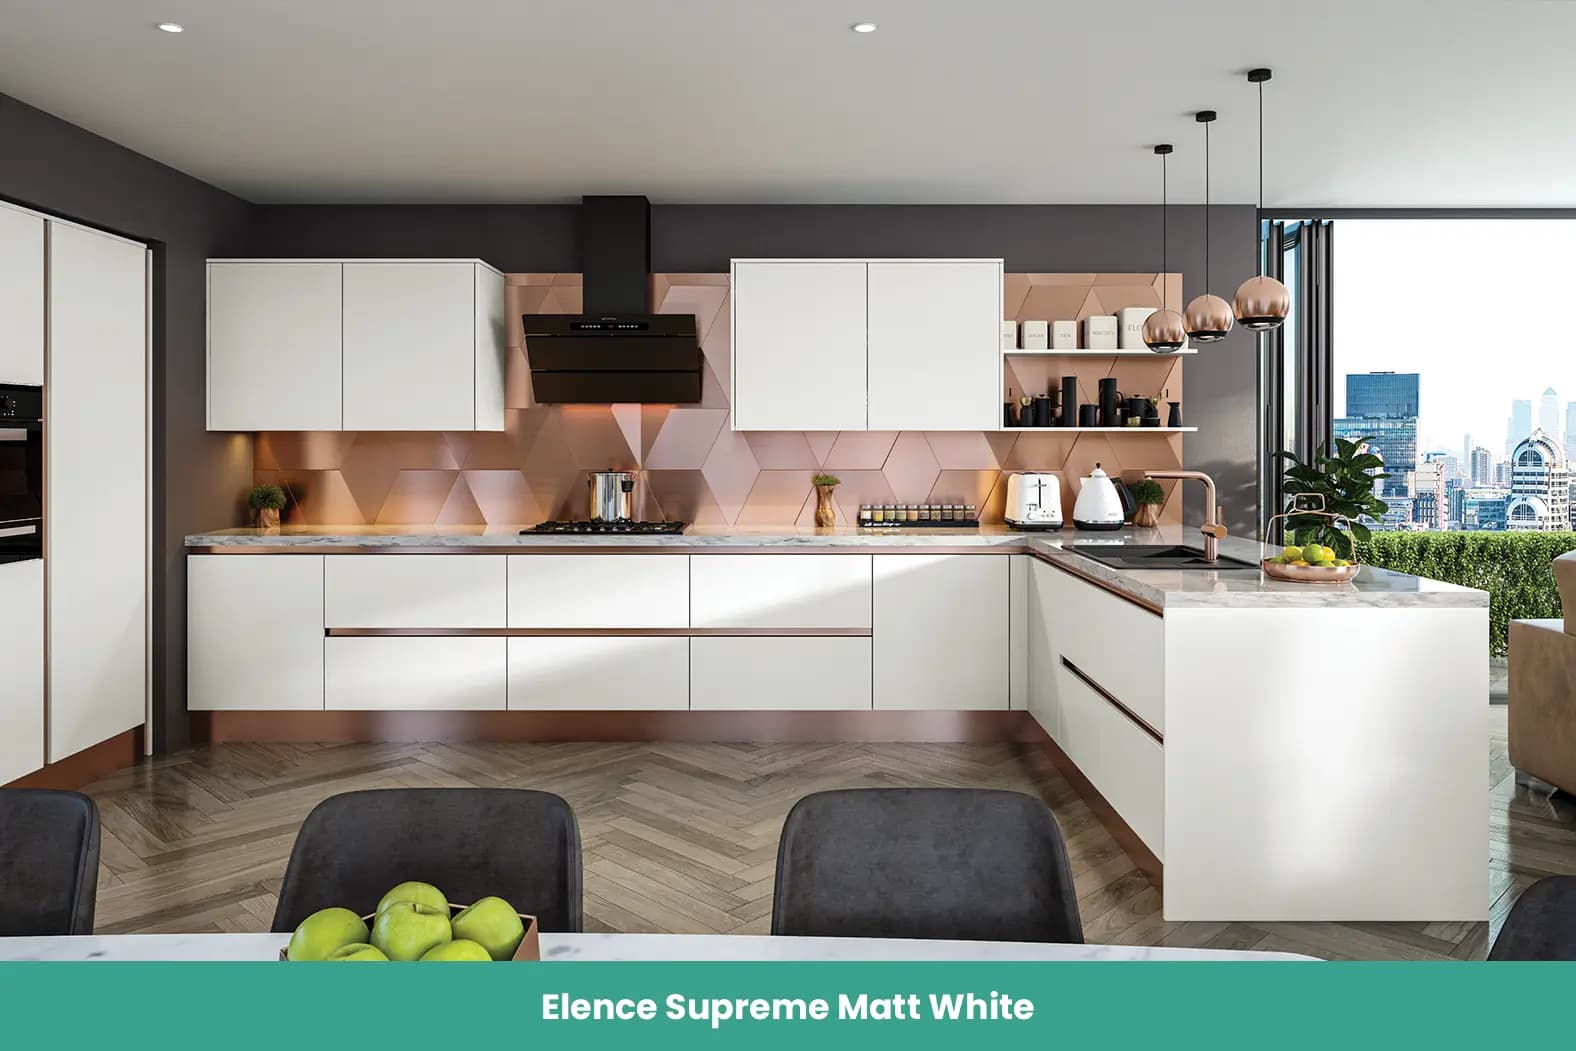 Elence Supreme Matt White Kitchen